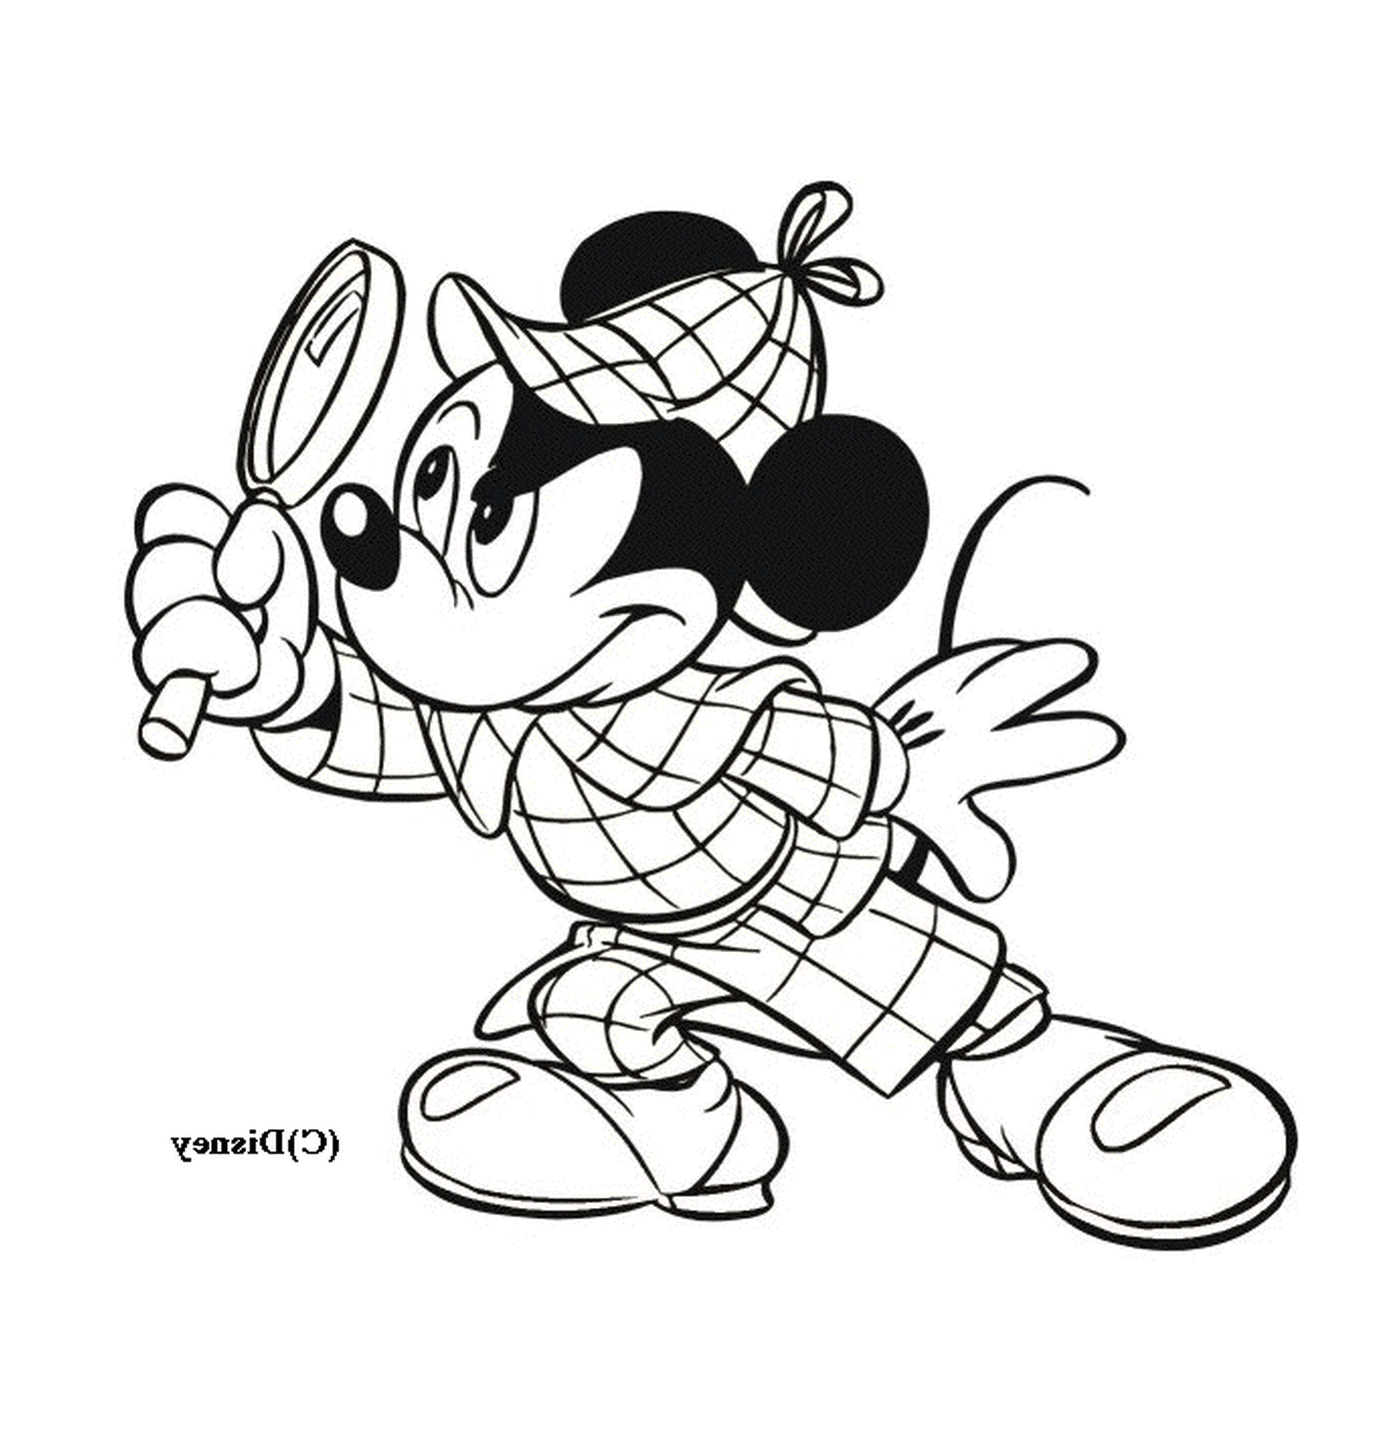  Mickey verkleidet als Sherlock Holmes mit seiner Lupe 